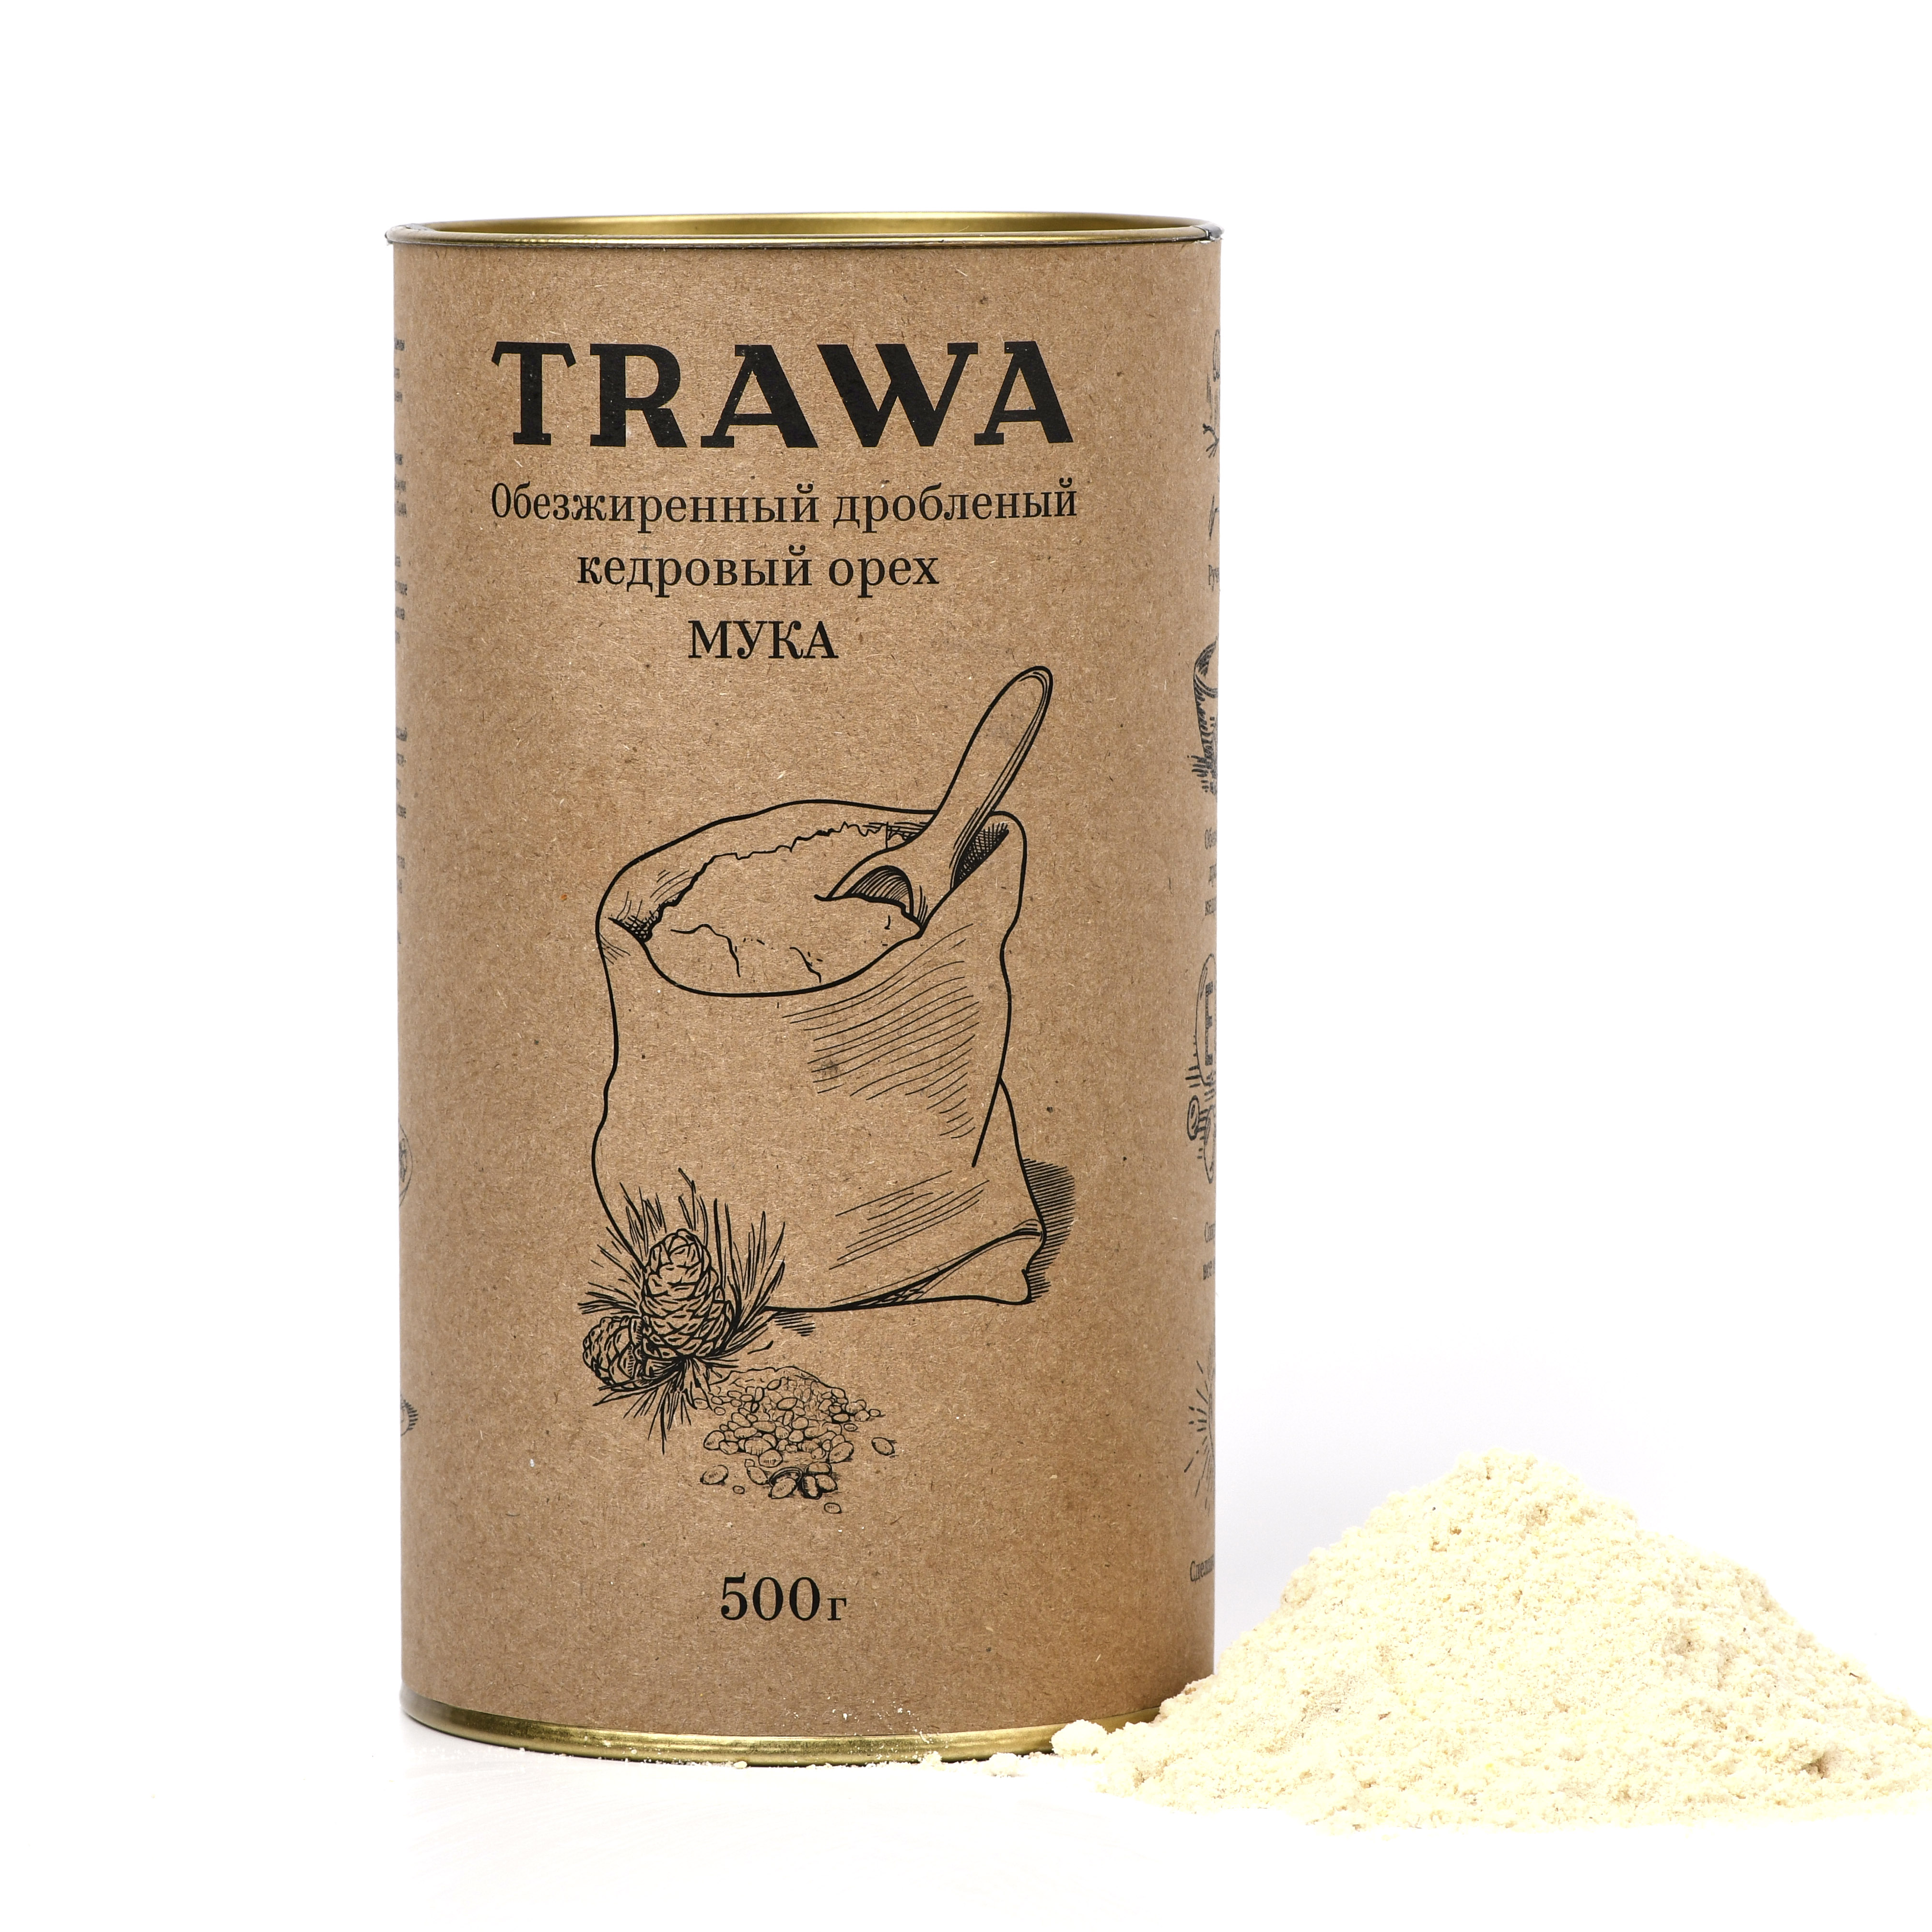 Обезжиренный и дробленый кедровых орех, Trawa - 500 г